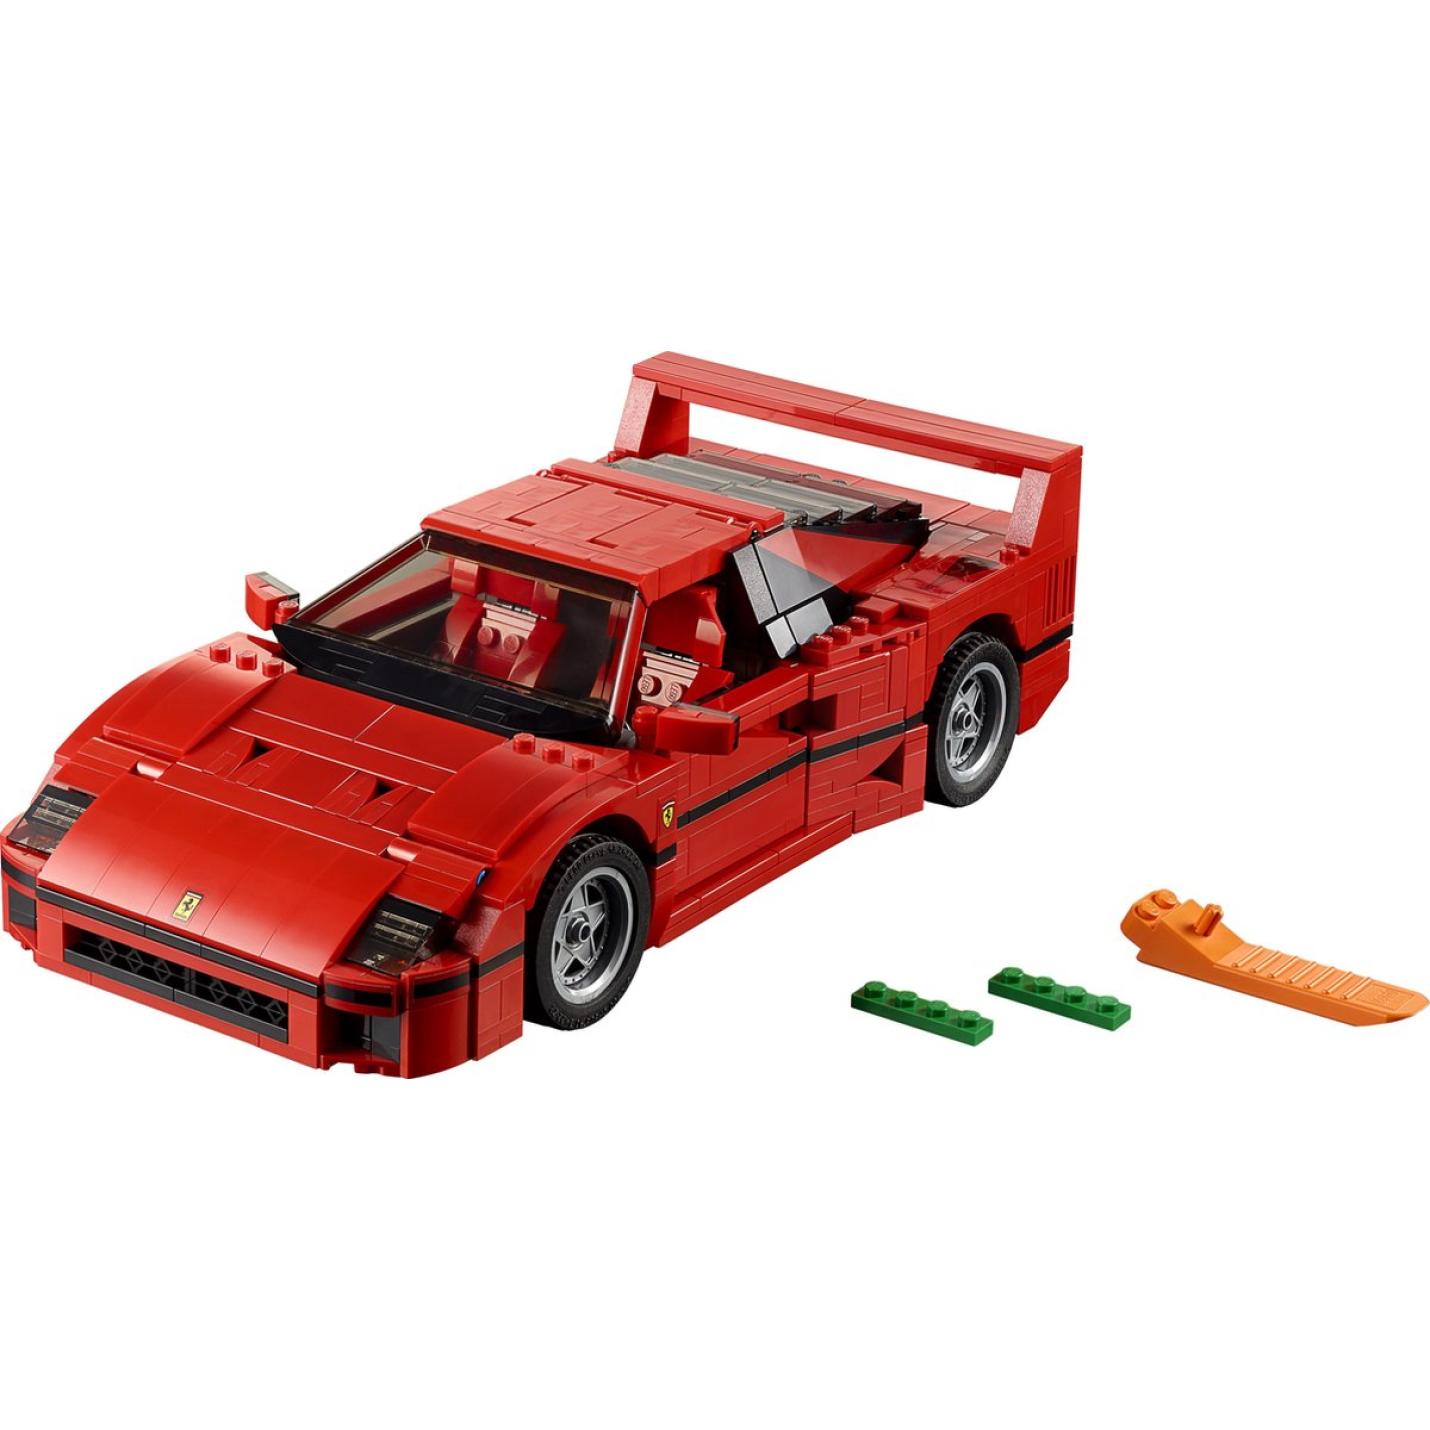 LEGO Creator Expert Ferrari F40 - 10248 3